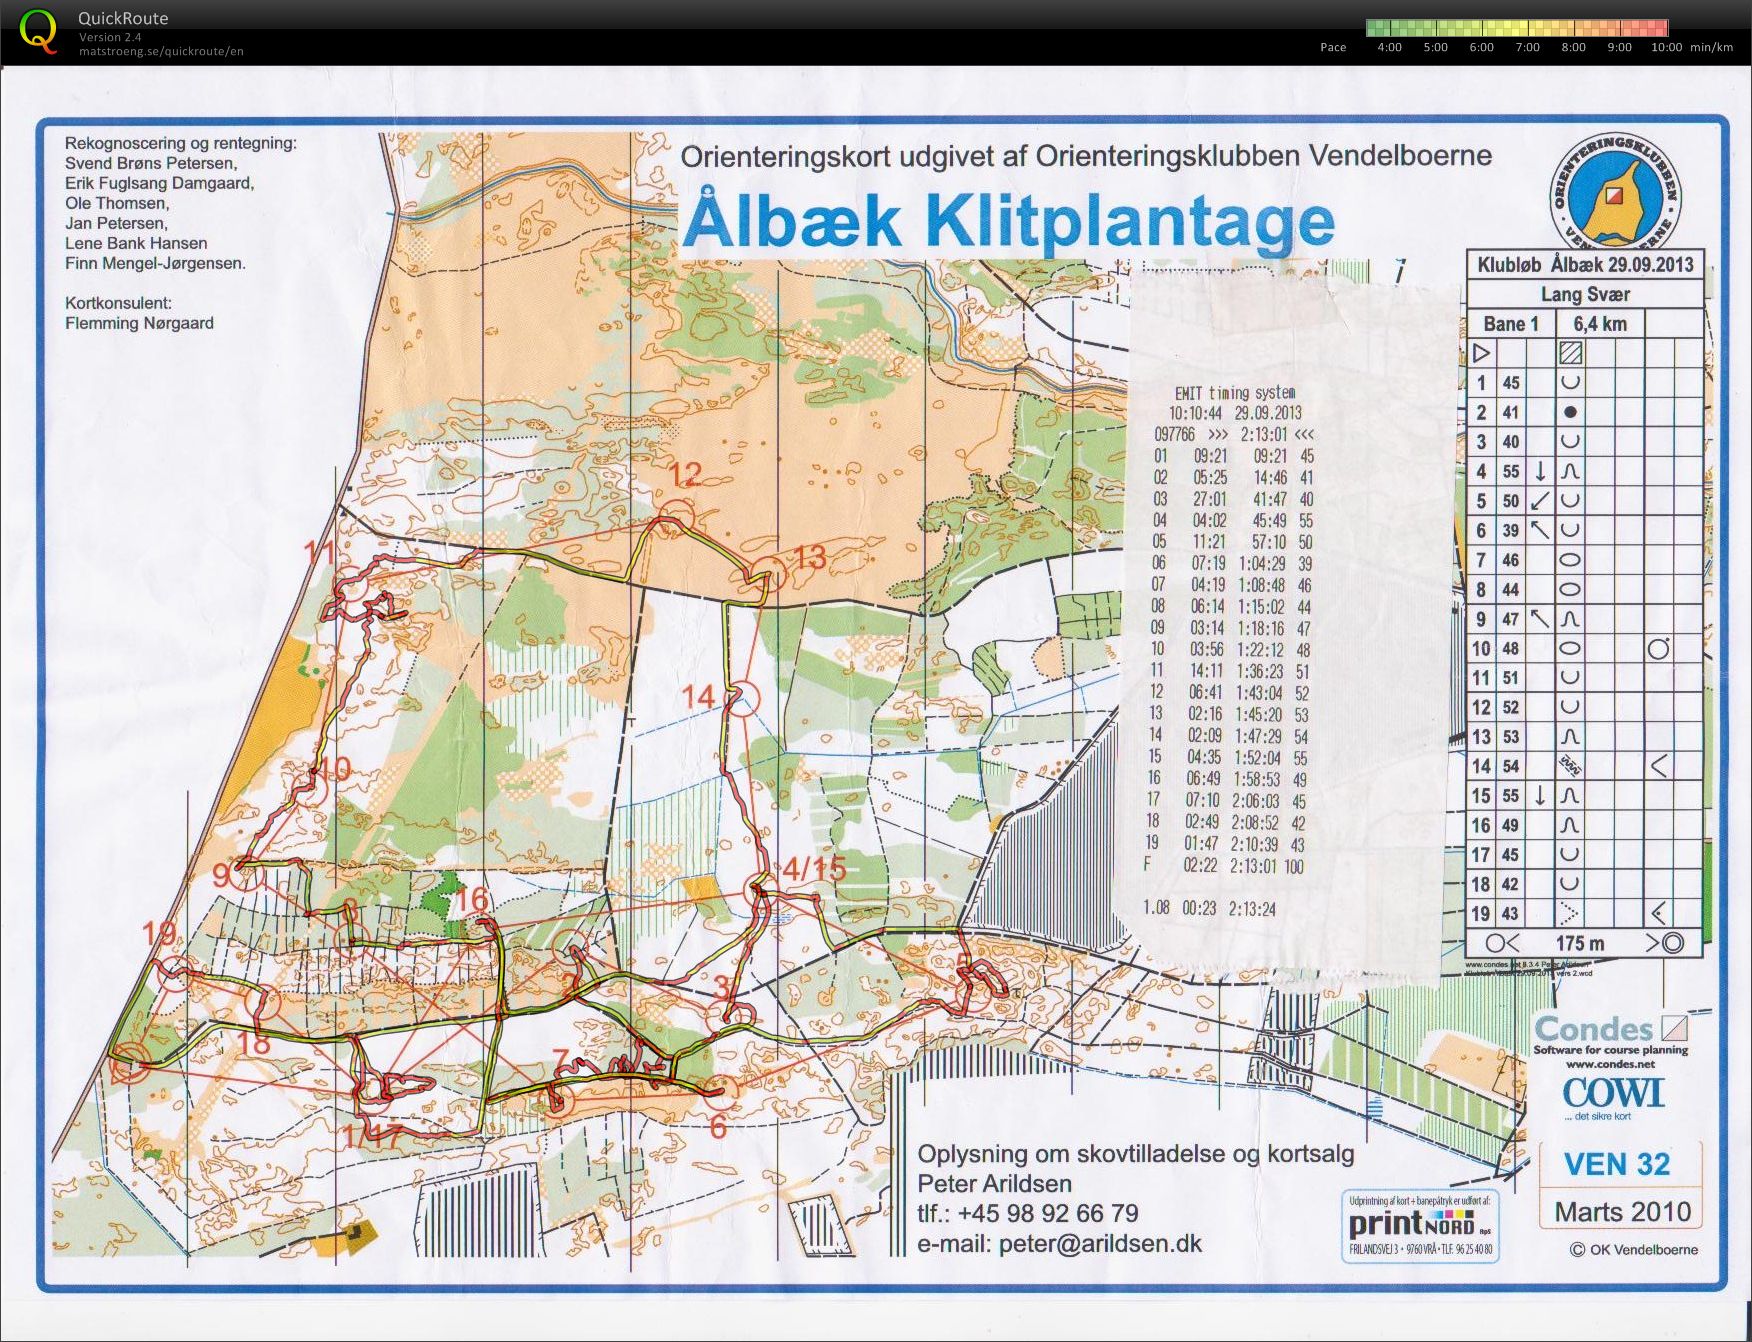 Klubløb, Ålbæk Klitplantage (2013-09-29)